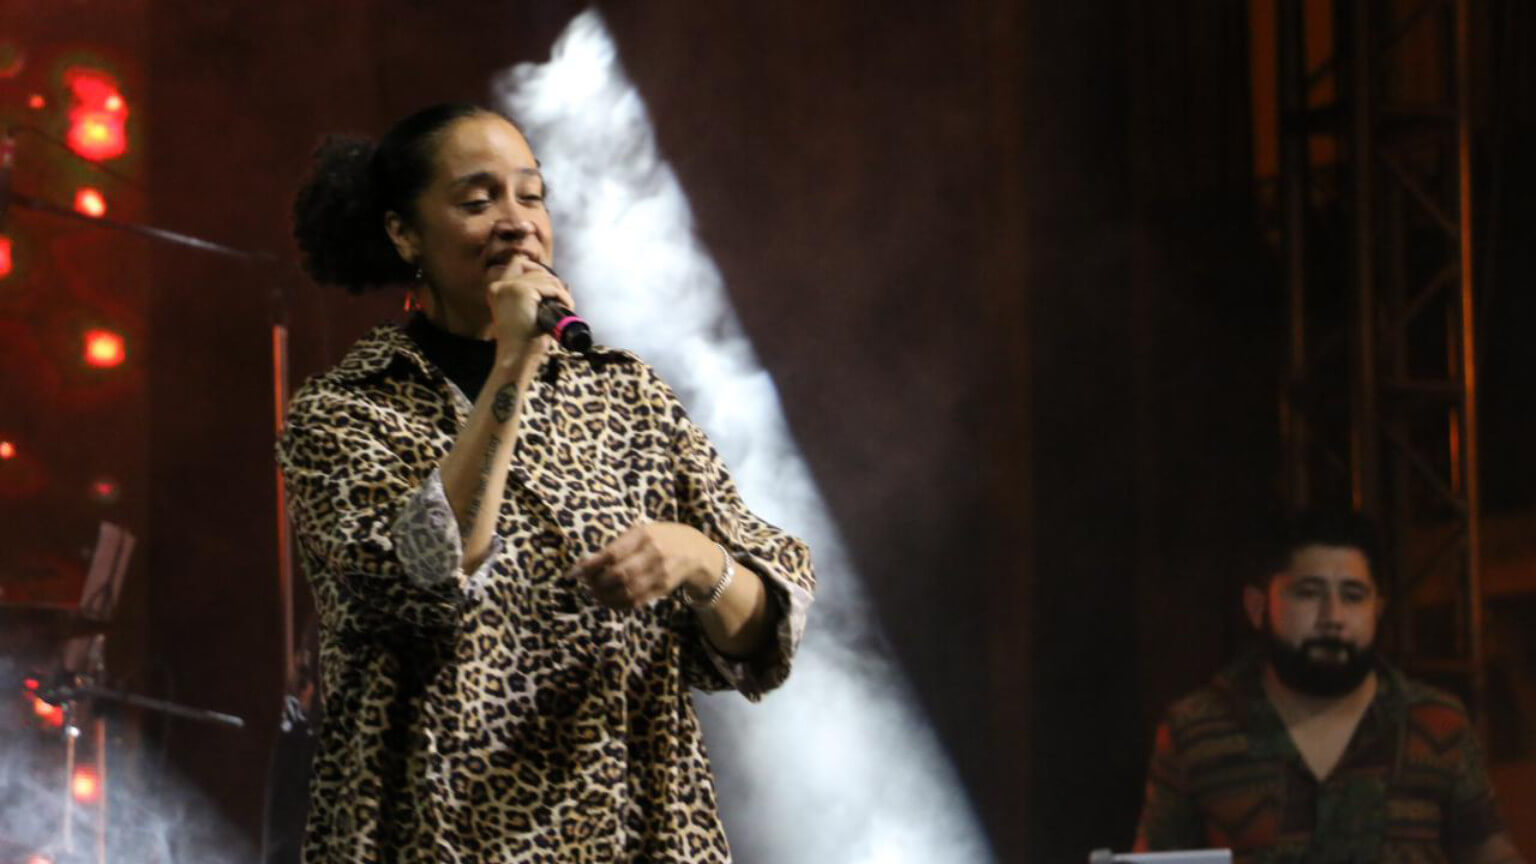 Talentosa artista uruguaya de reggae, se presentó por primera vez en Zacatecas